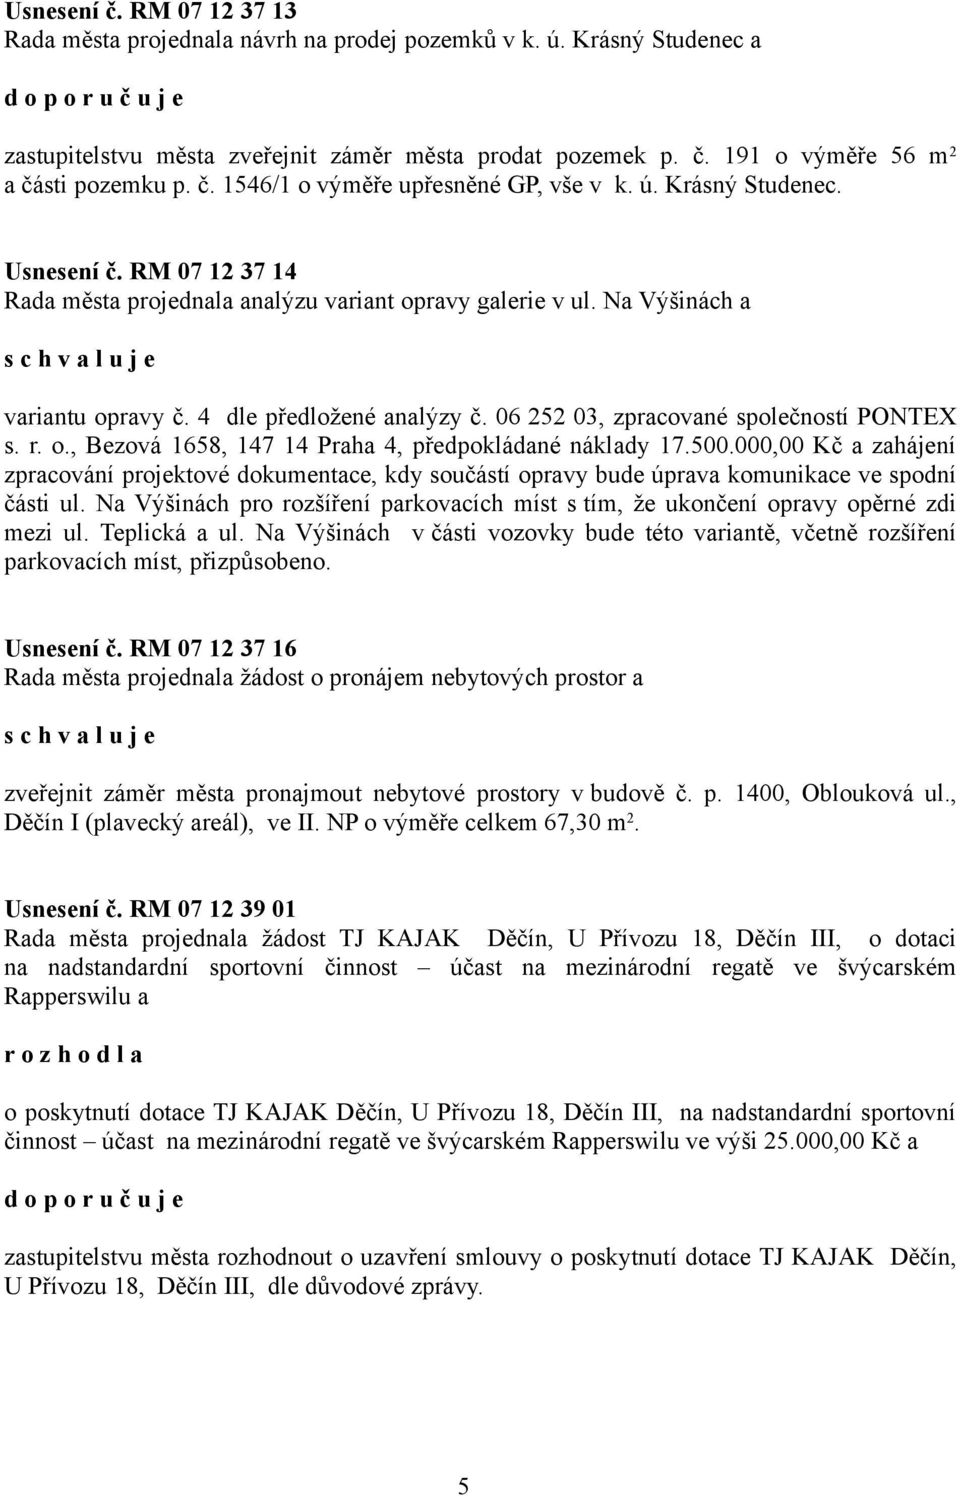 4 dle předložené analýzy č. 06 252 03, zpracované společností PONTEX s. r. o., Bezová 1658, 147 14 Praha 4, předpokládané náklady 17.500.